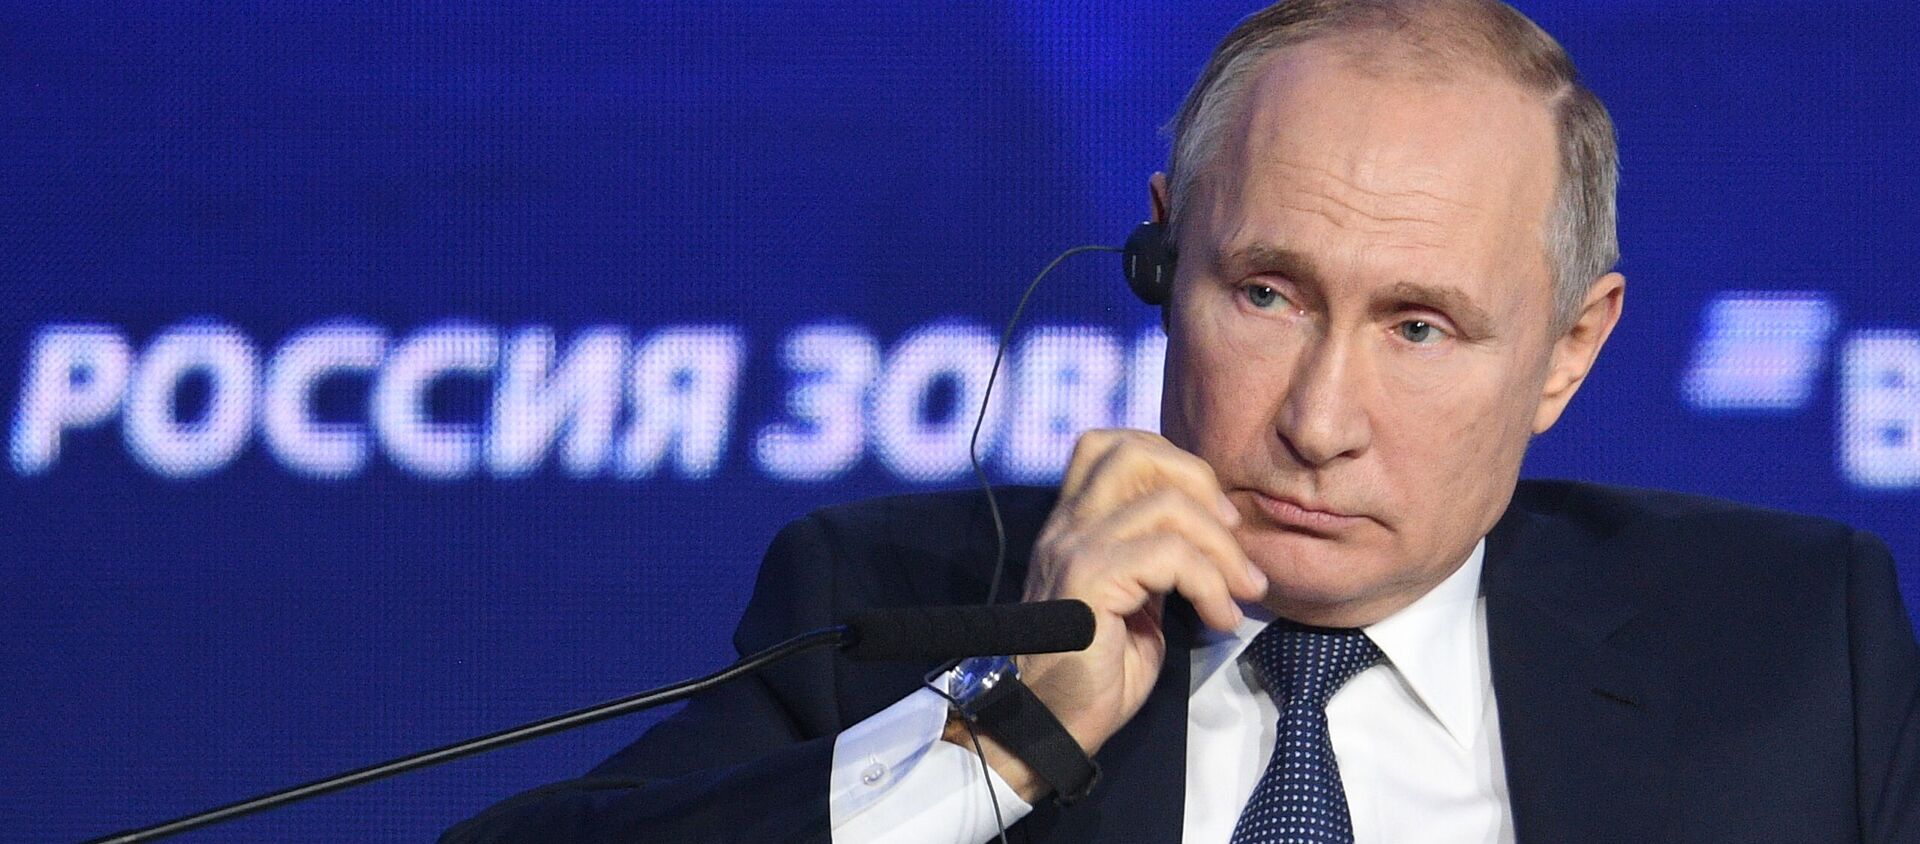 Tổng thống Nga Vladimir Putin thăm Diễn đàn đầu tư VTB lần thứ 11 Nga đang kêu gọi! - Sputnik Việt Nam, 1920, 20.11.2019